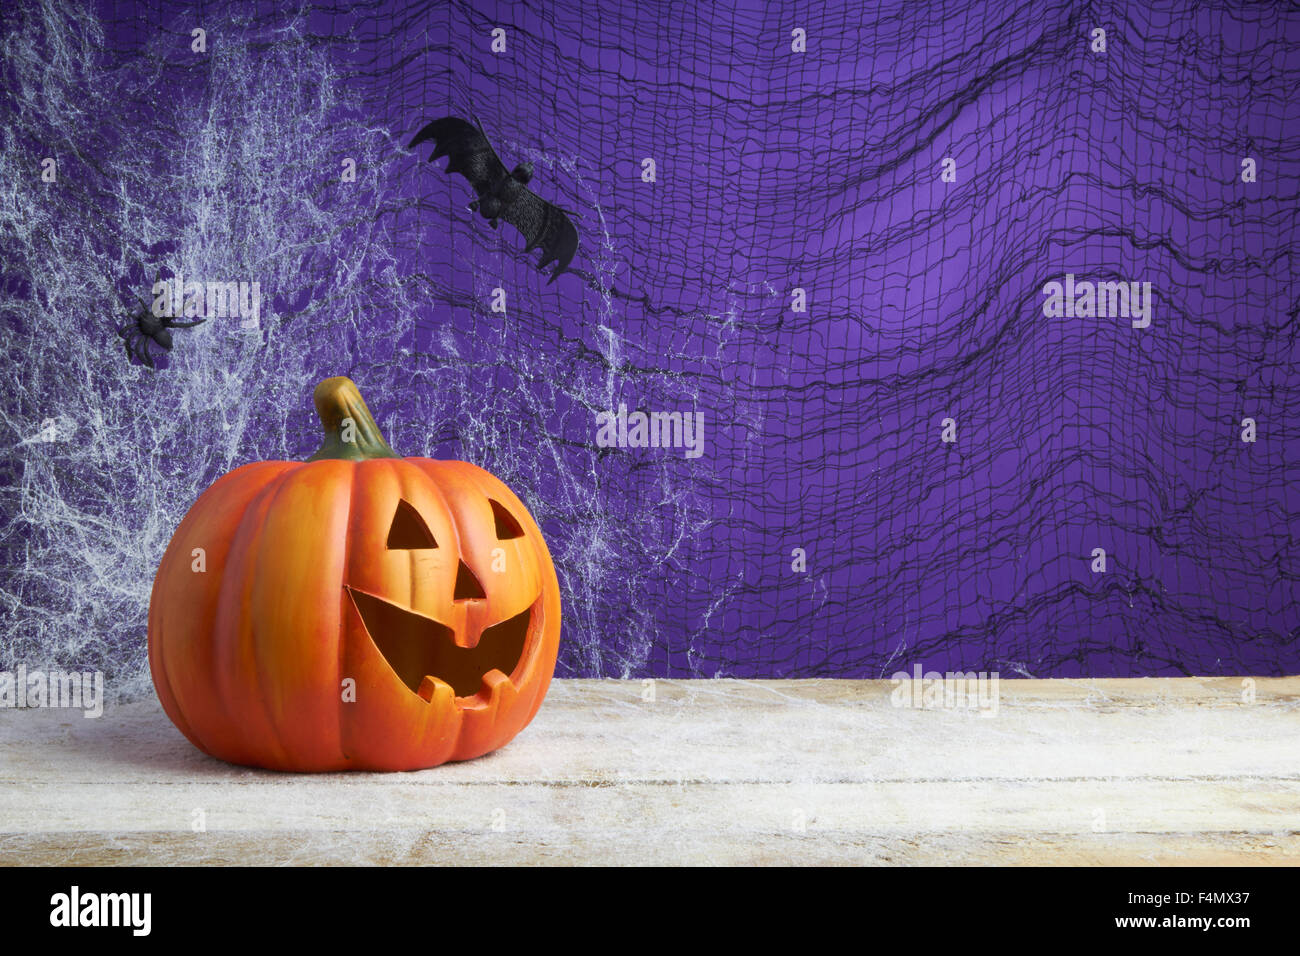 Concepto de Halloween con un jack o lantern calabaza, araña de juguete y bat en una telaraña de fondo oscuro Foto de stock